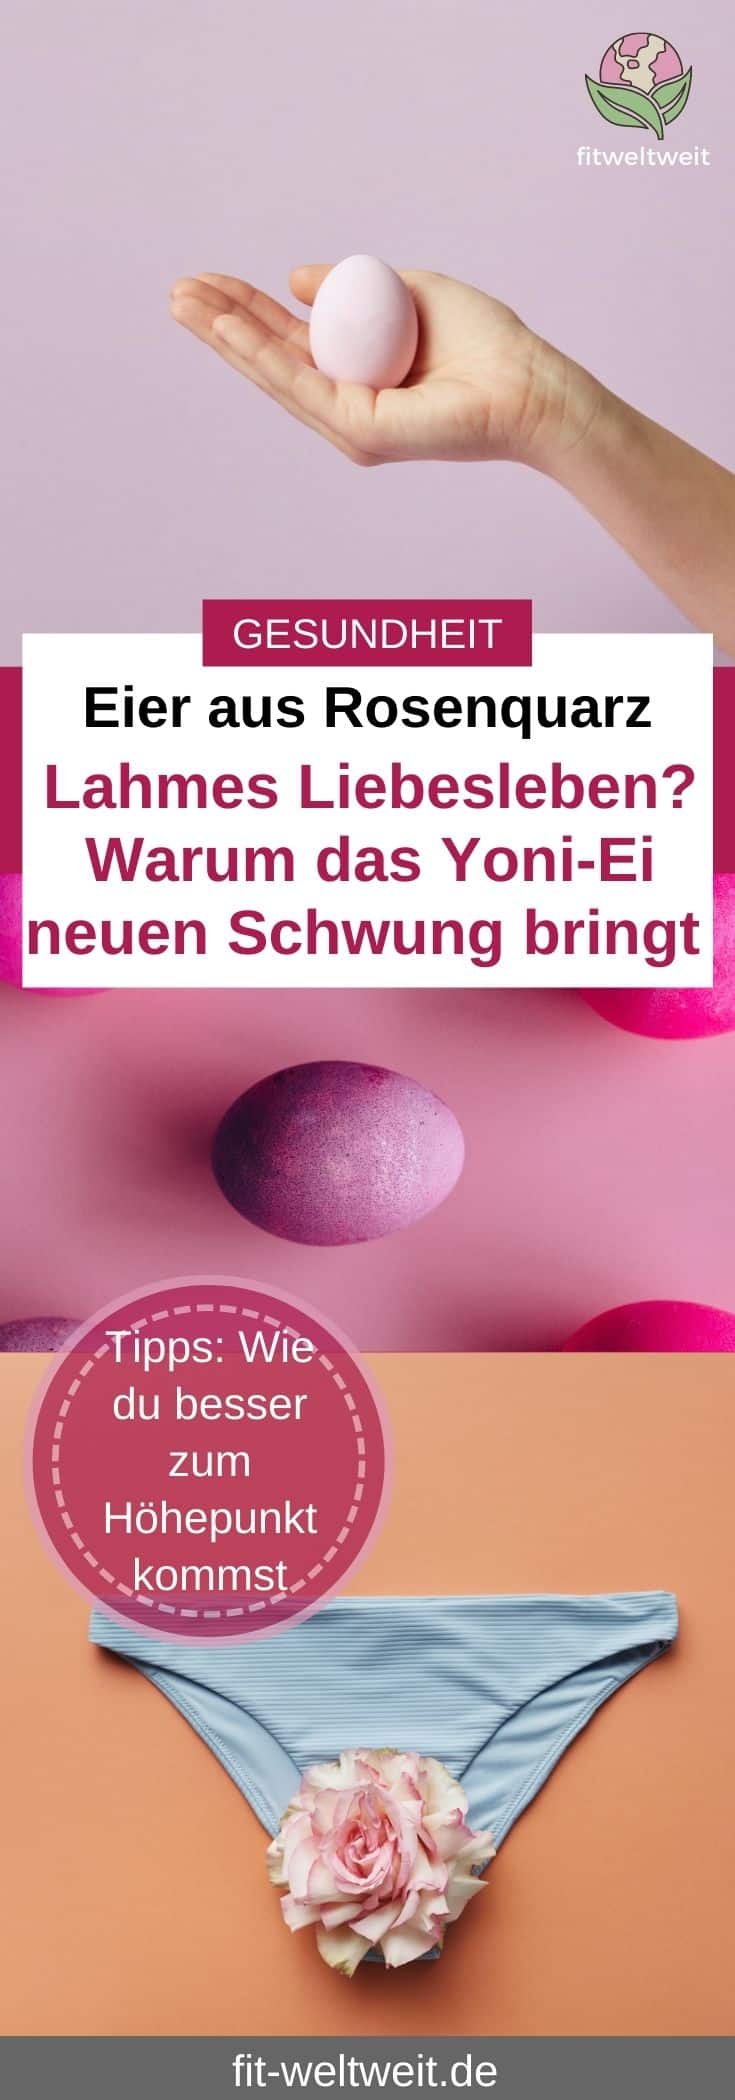 Yoni-Ei aus Rosenquarz - die Vorteile